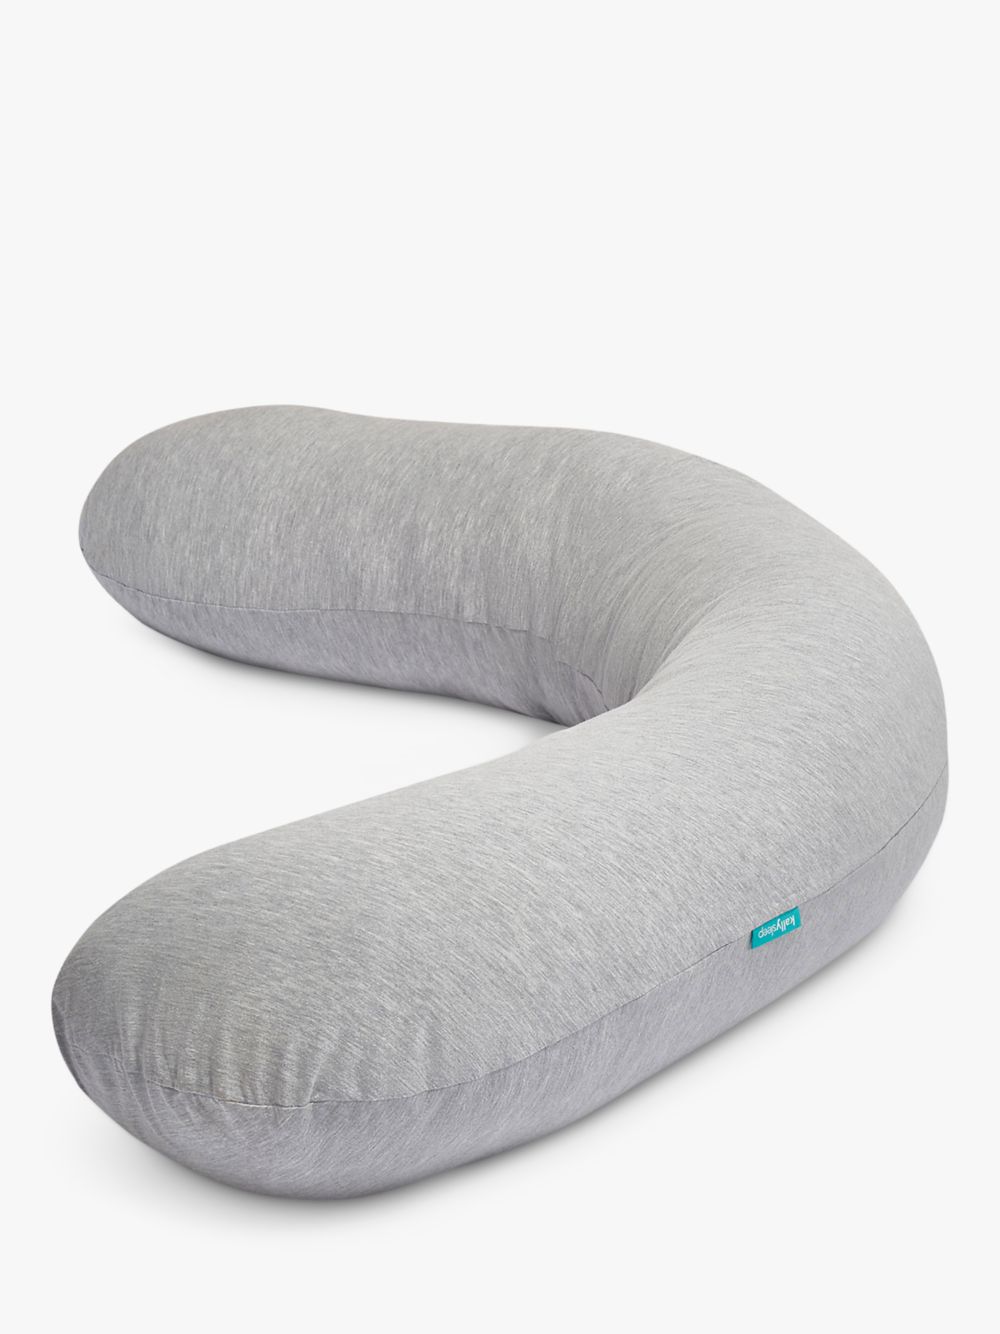 Полноразмерная подушка для поддержки тела Kally Sleep, серая